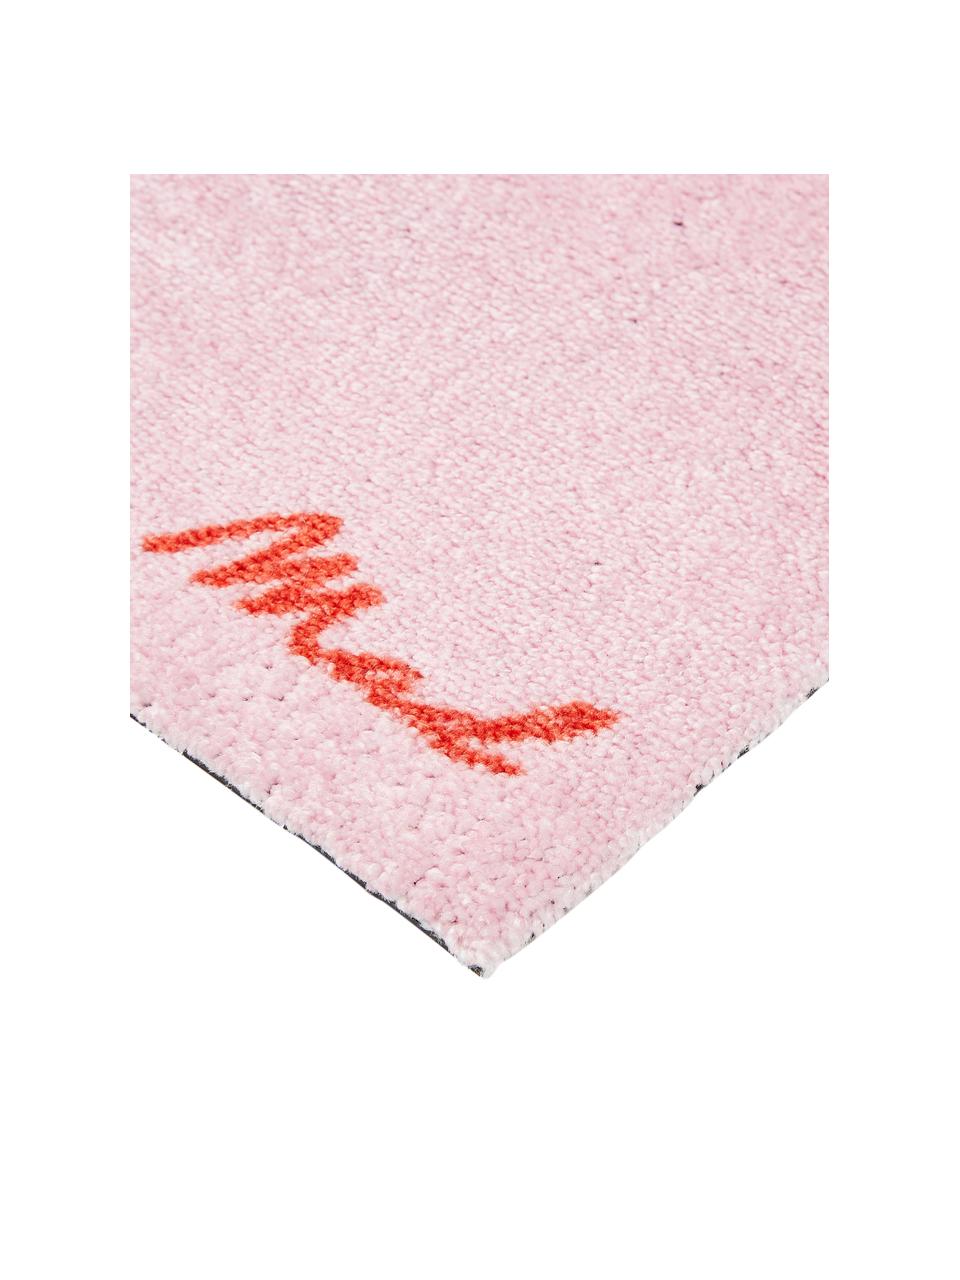 Zerbino Perla in poliammide leggermente lucido, lavabile, Retro: materiale sintetico, Rosa, Larg. 50 x Lung. 75 cm